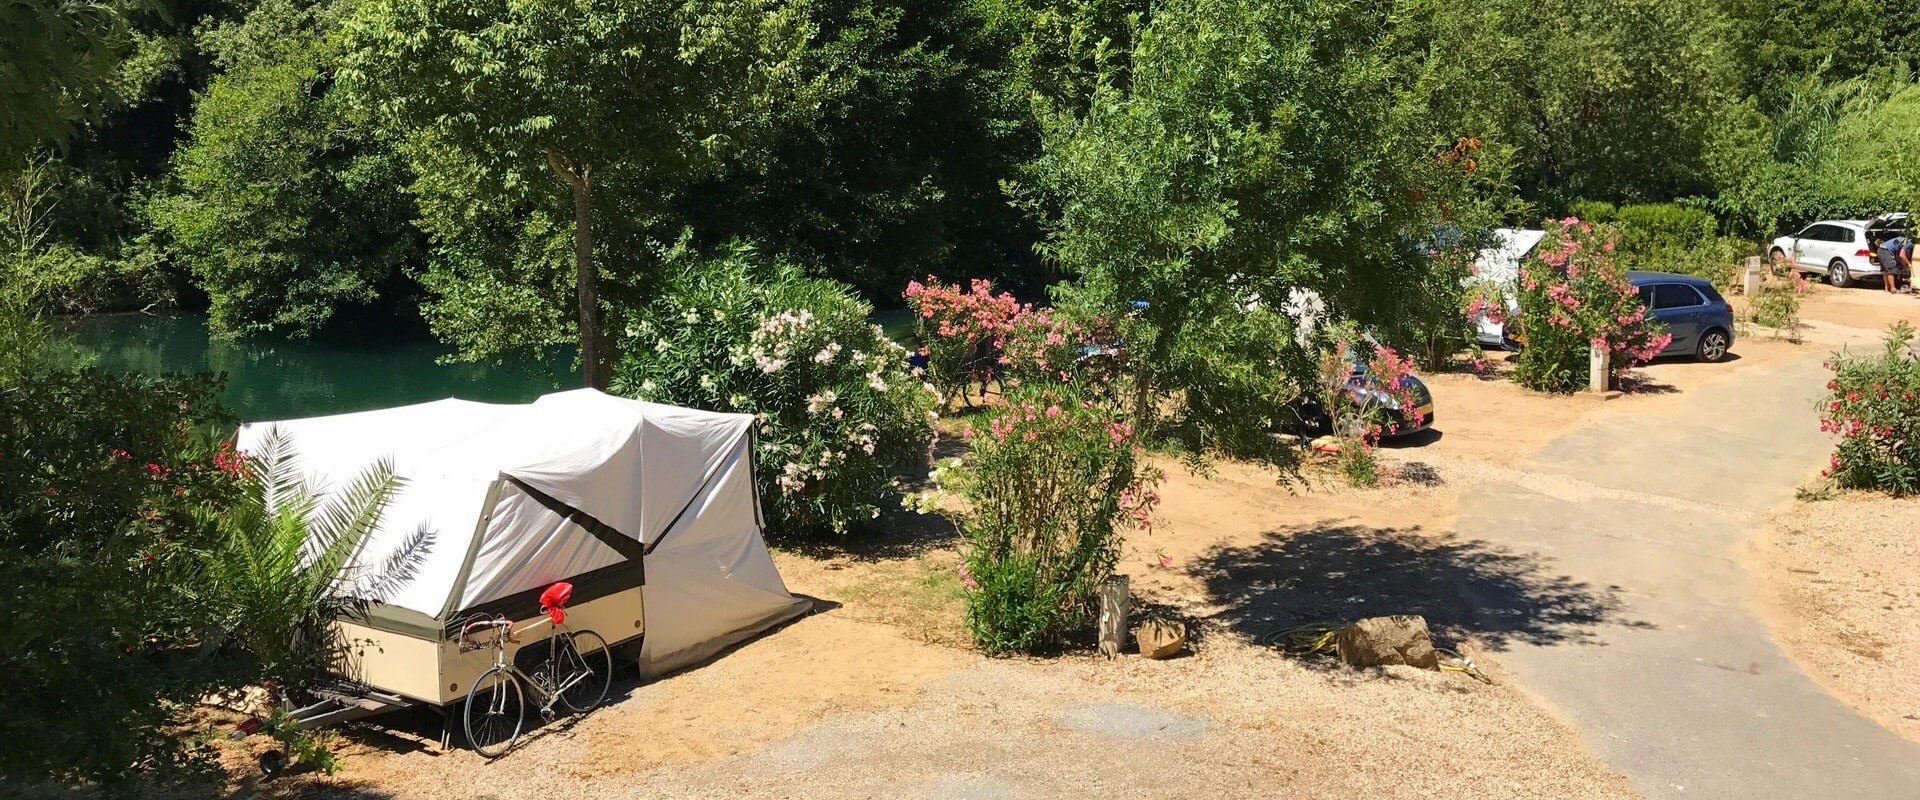 Przyczepy kempingowe, kampery i pole namiotowe Auribeau-sur-Siagne